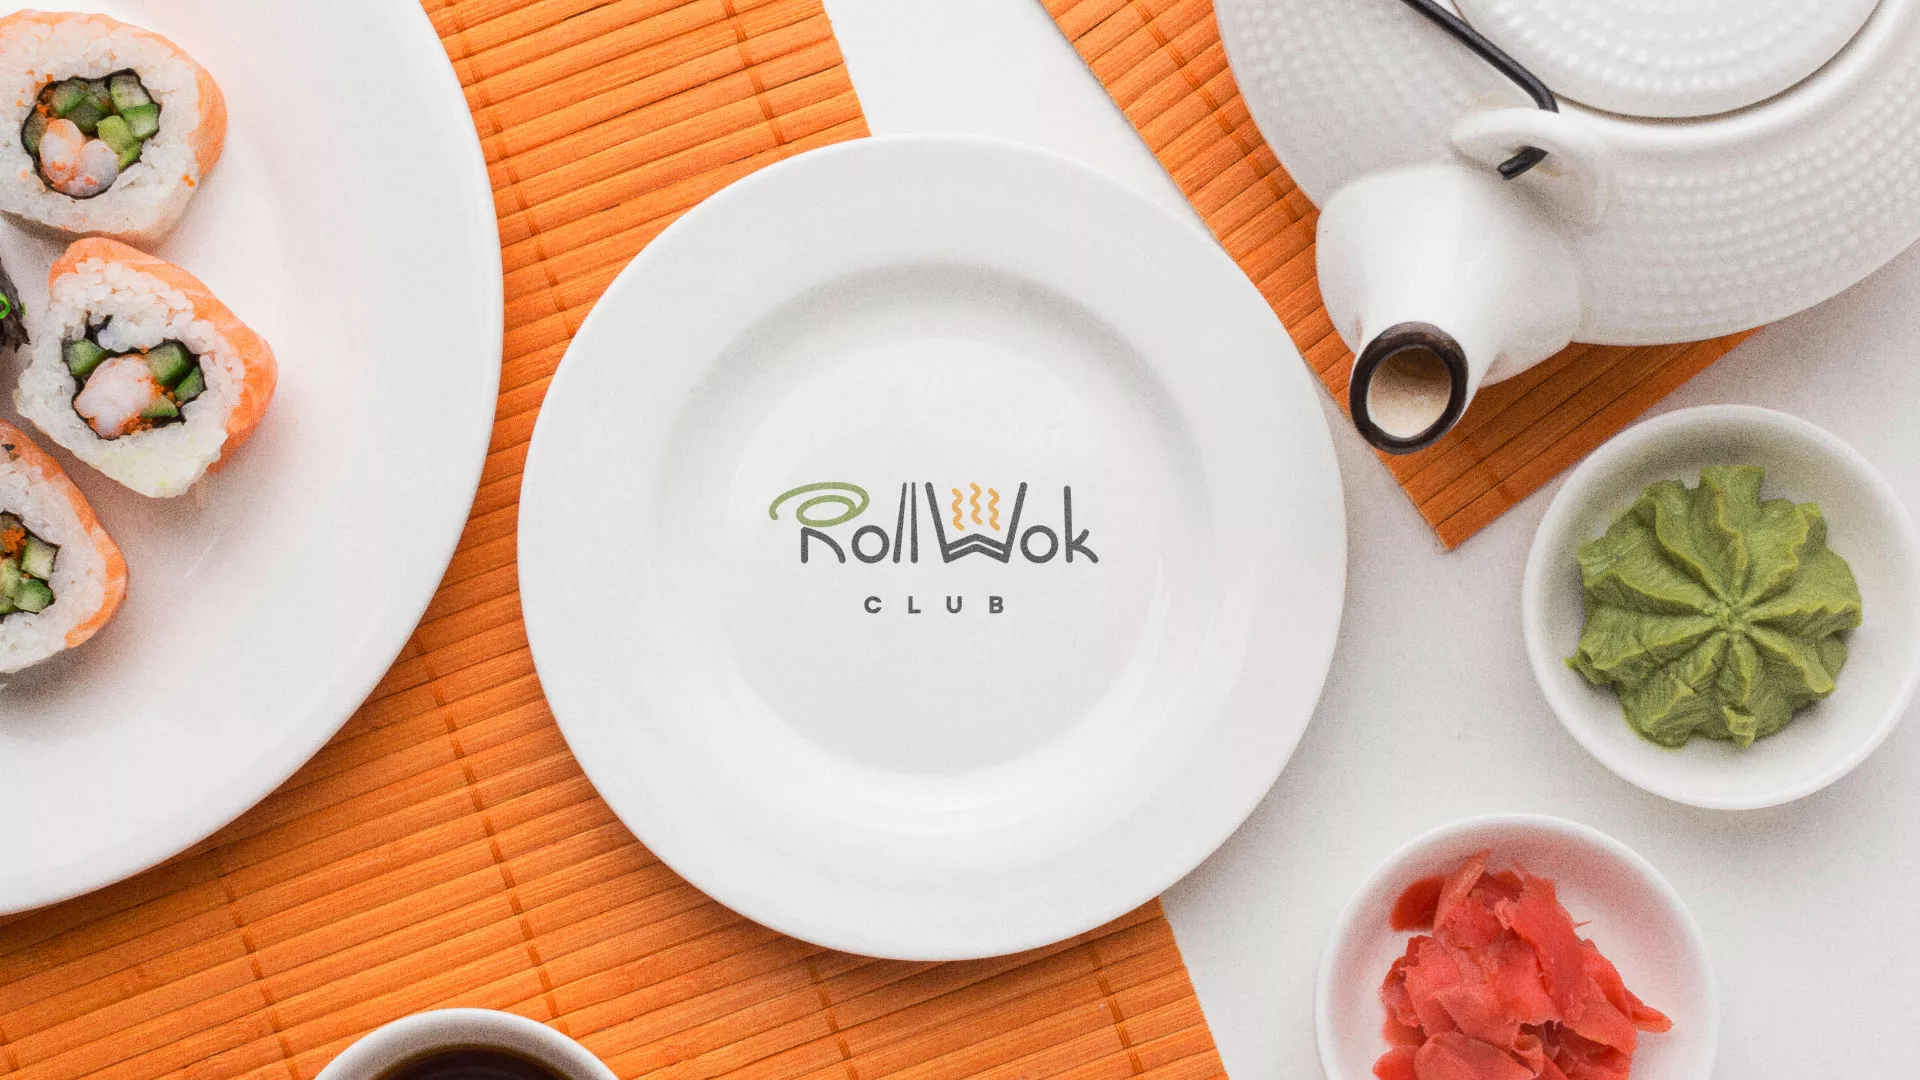 Разработка логотипа и фирменного стиля суши-бара «Roll Wok Club» в Горно-Алтайске